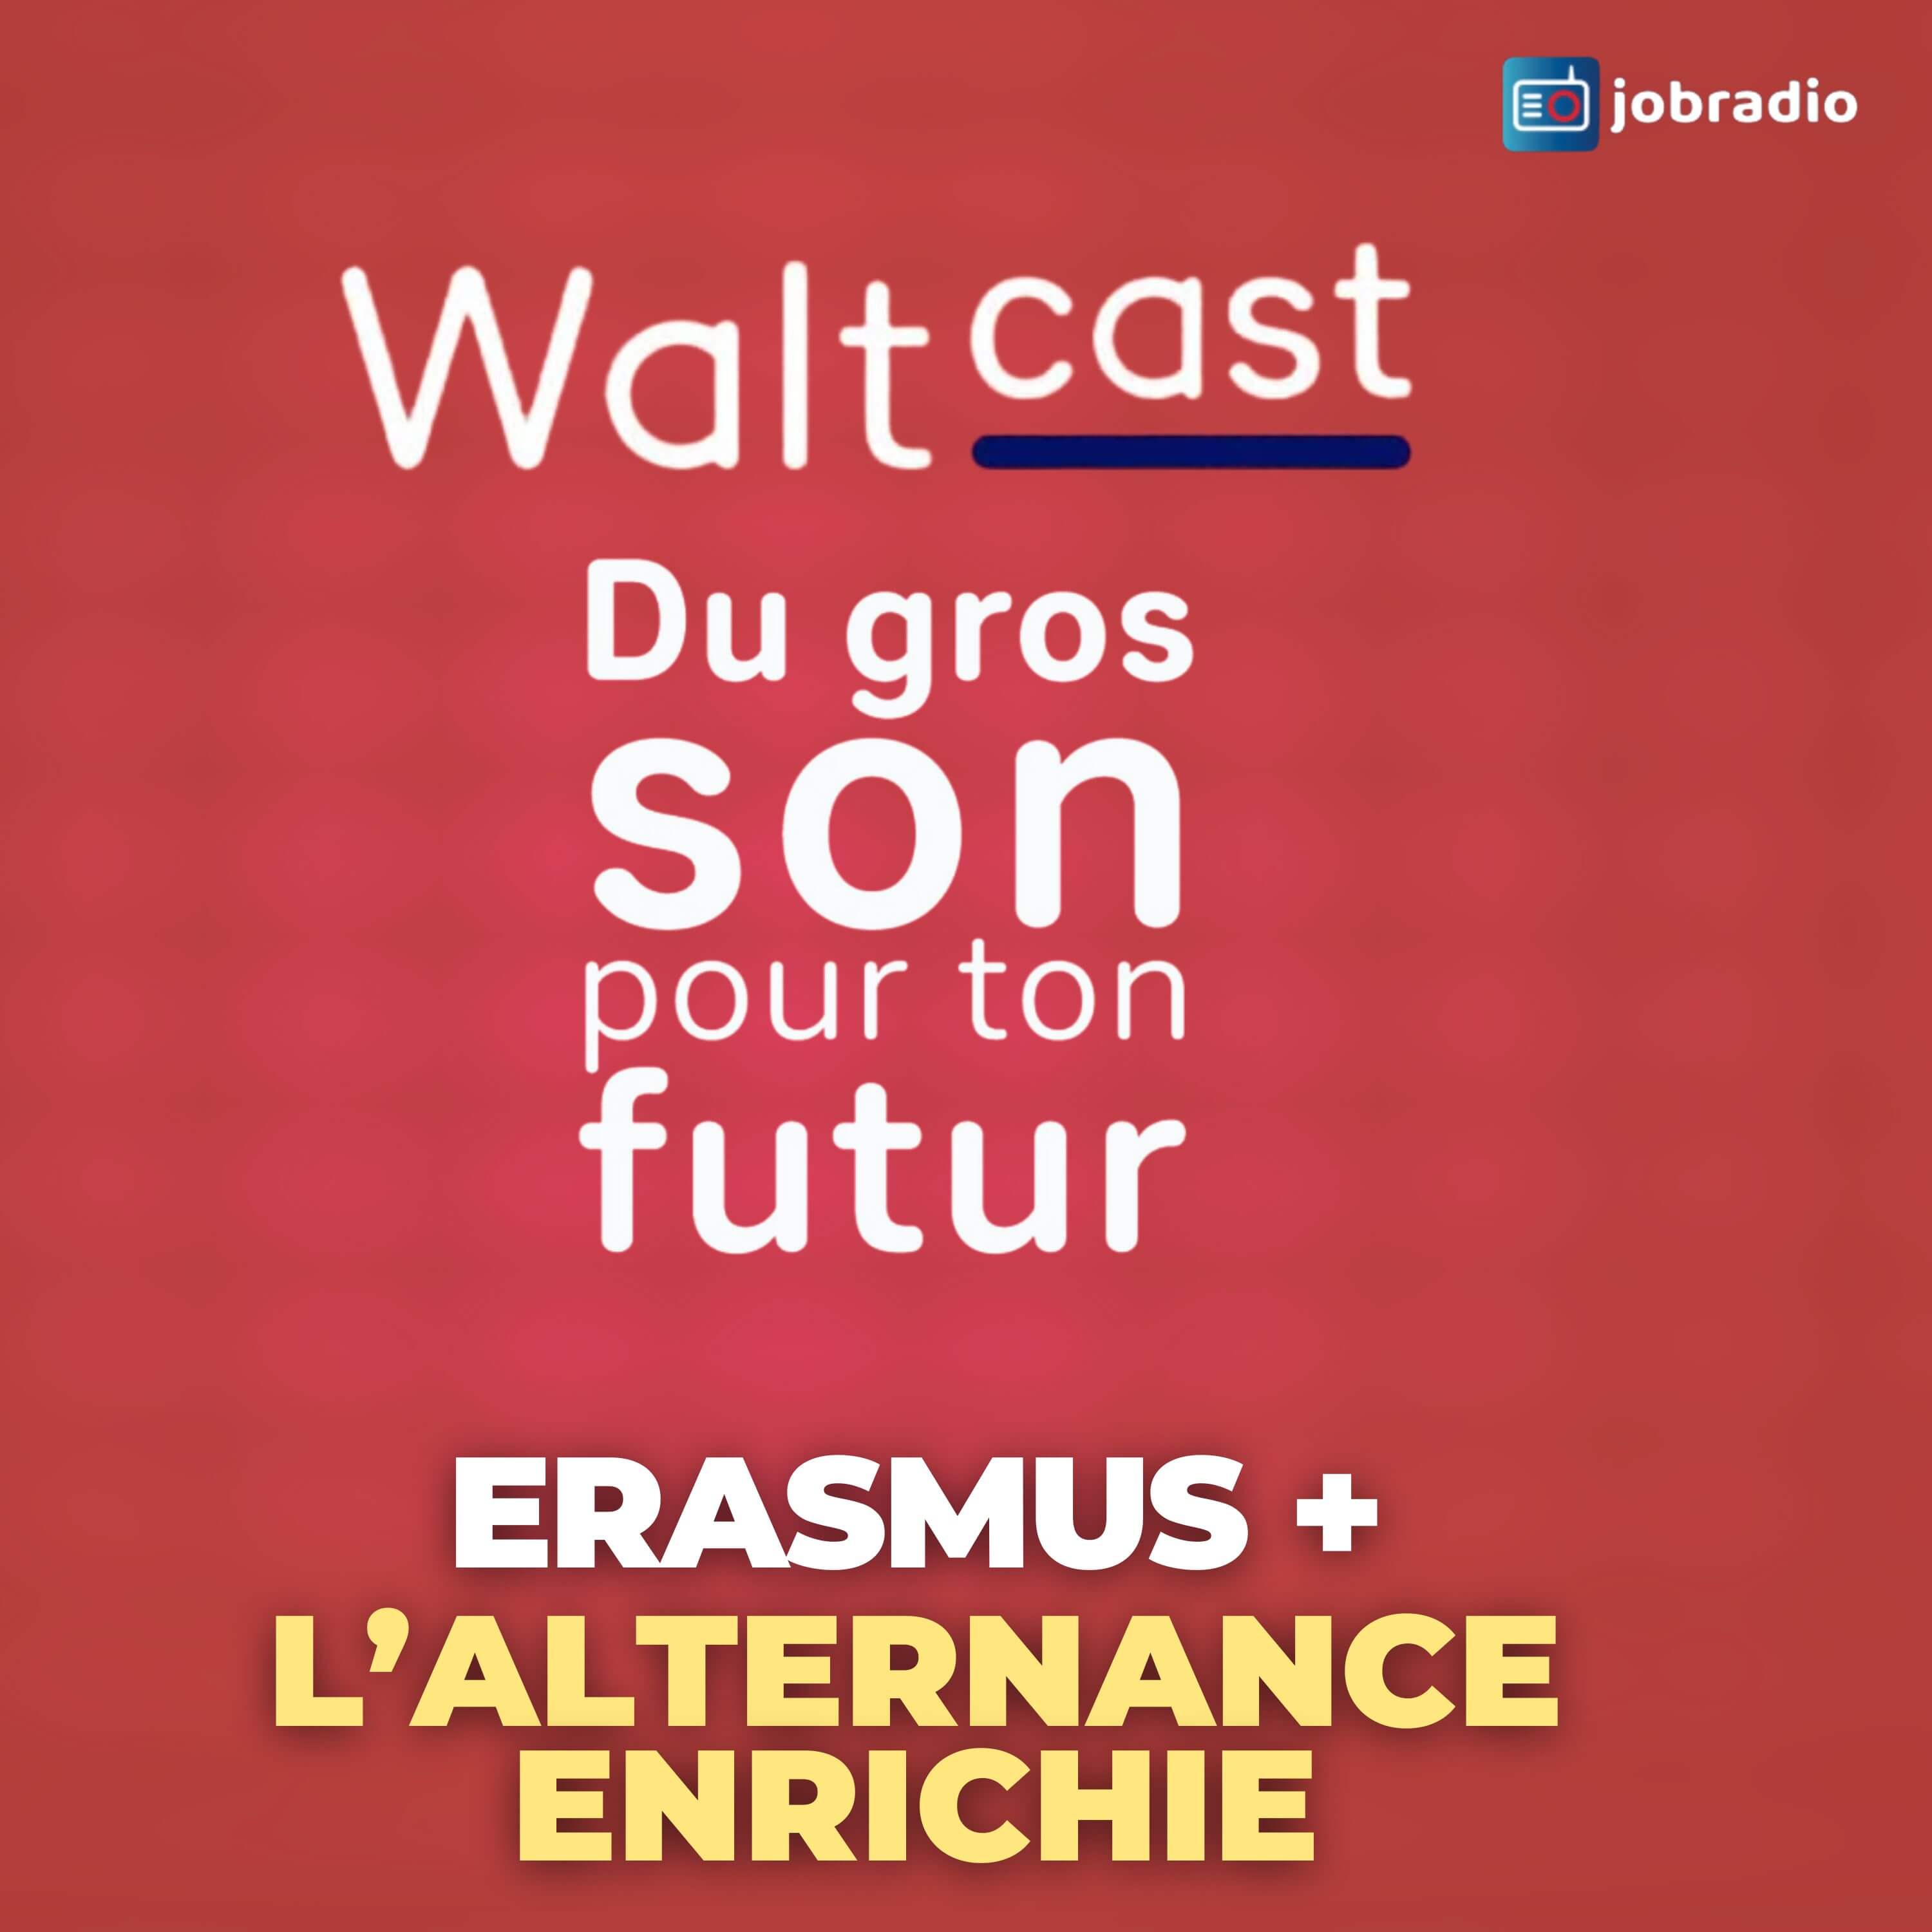 Waltcast 3 : Focus sur Erasmus + avec Jean-Baptiste